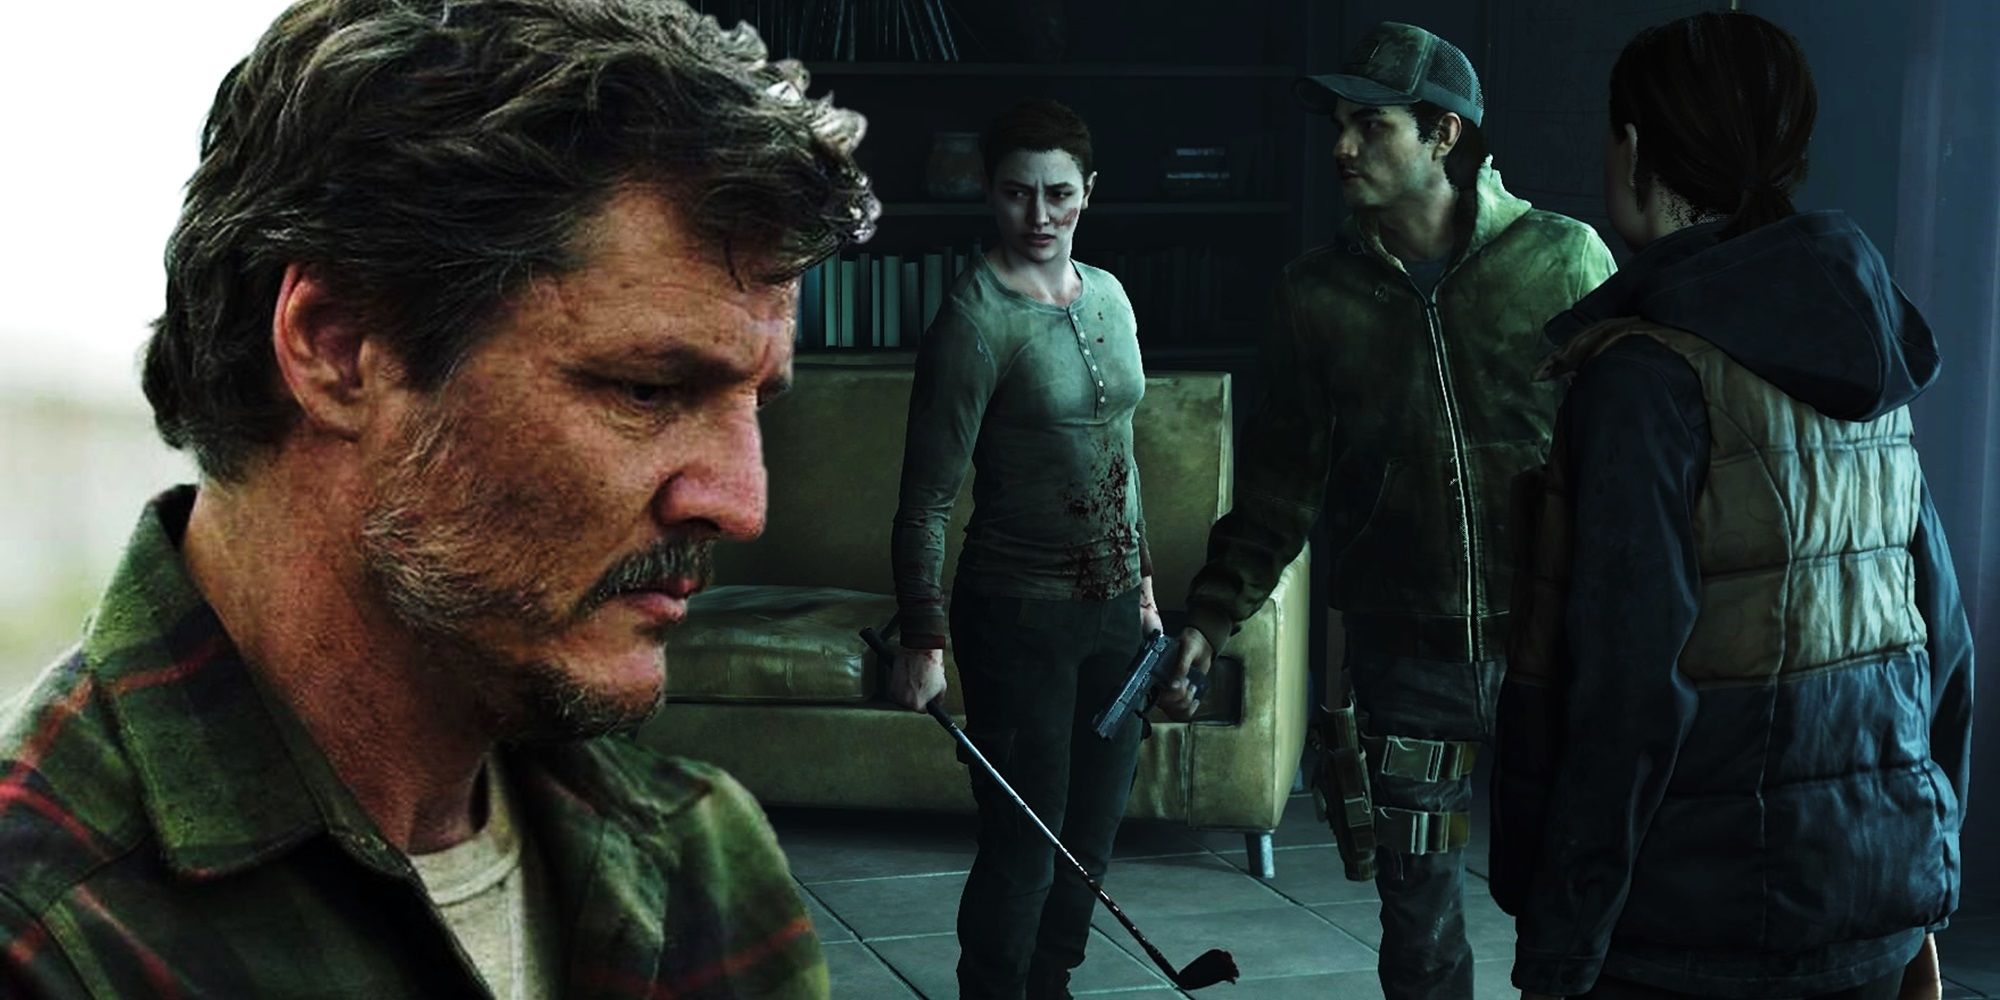 El casting de The Last Of Us sugiere que la temporada 2 será fiel al juego en un sentido importante